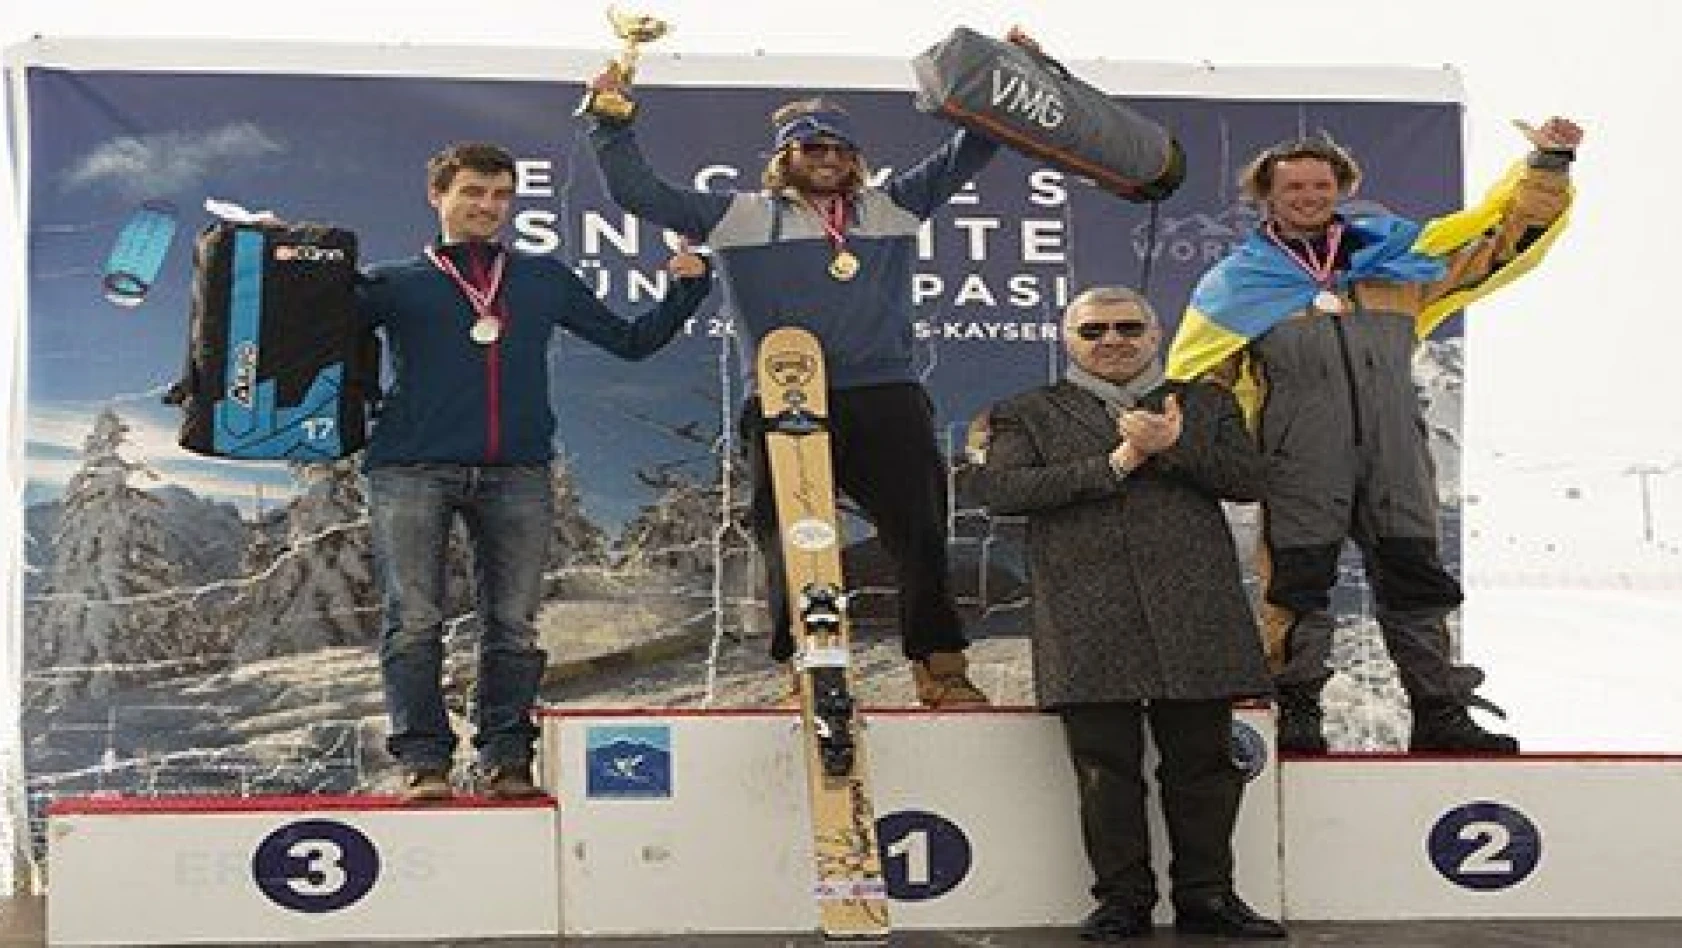 Snowkite Dünya Kupası Erciyes'te yapıldı 